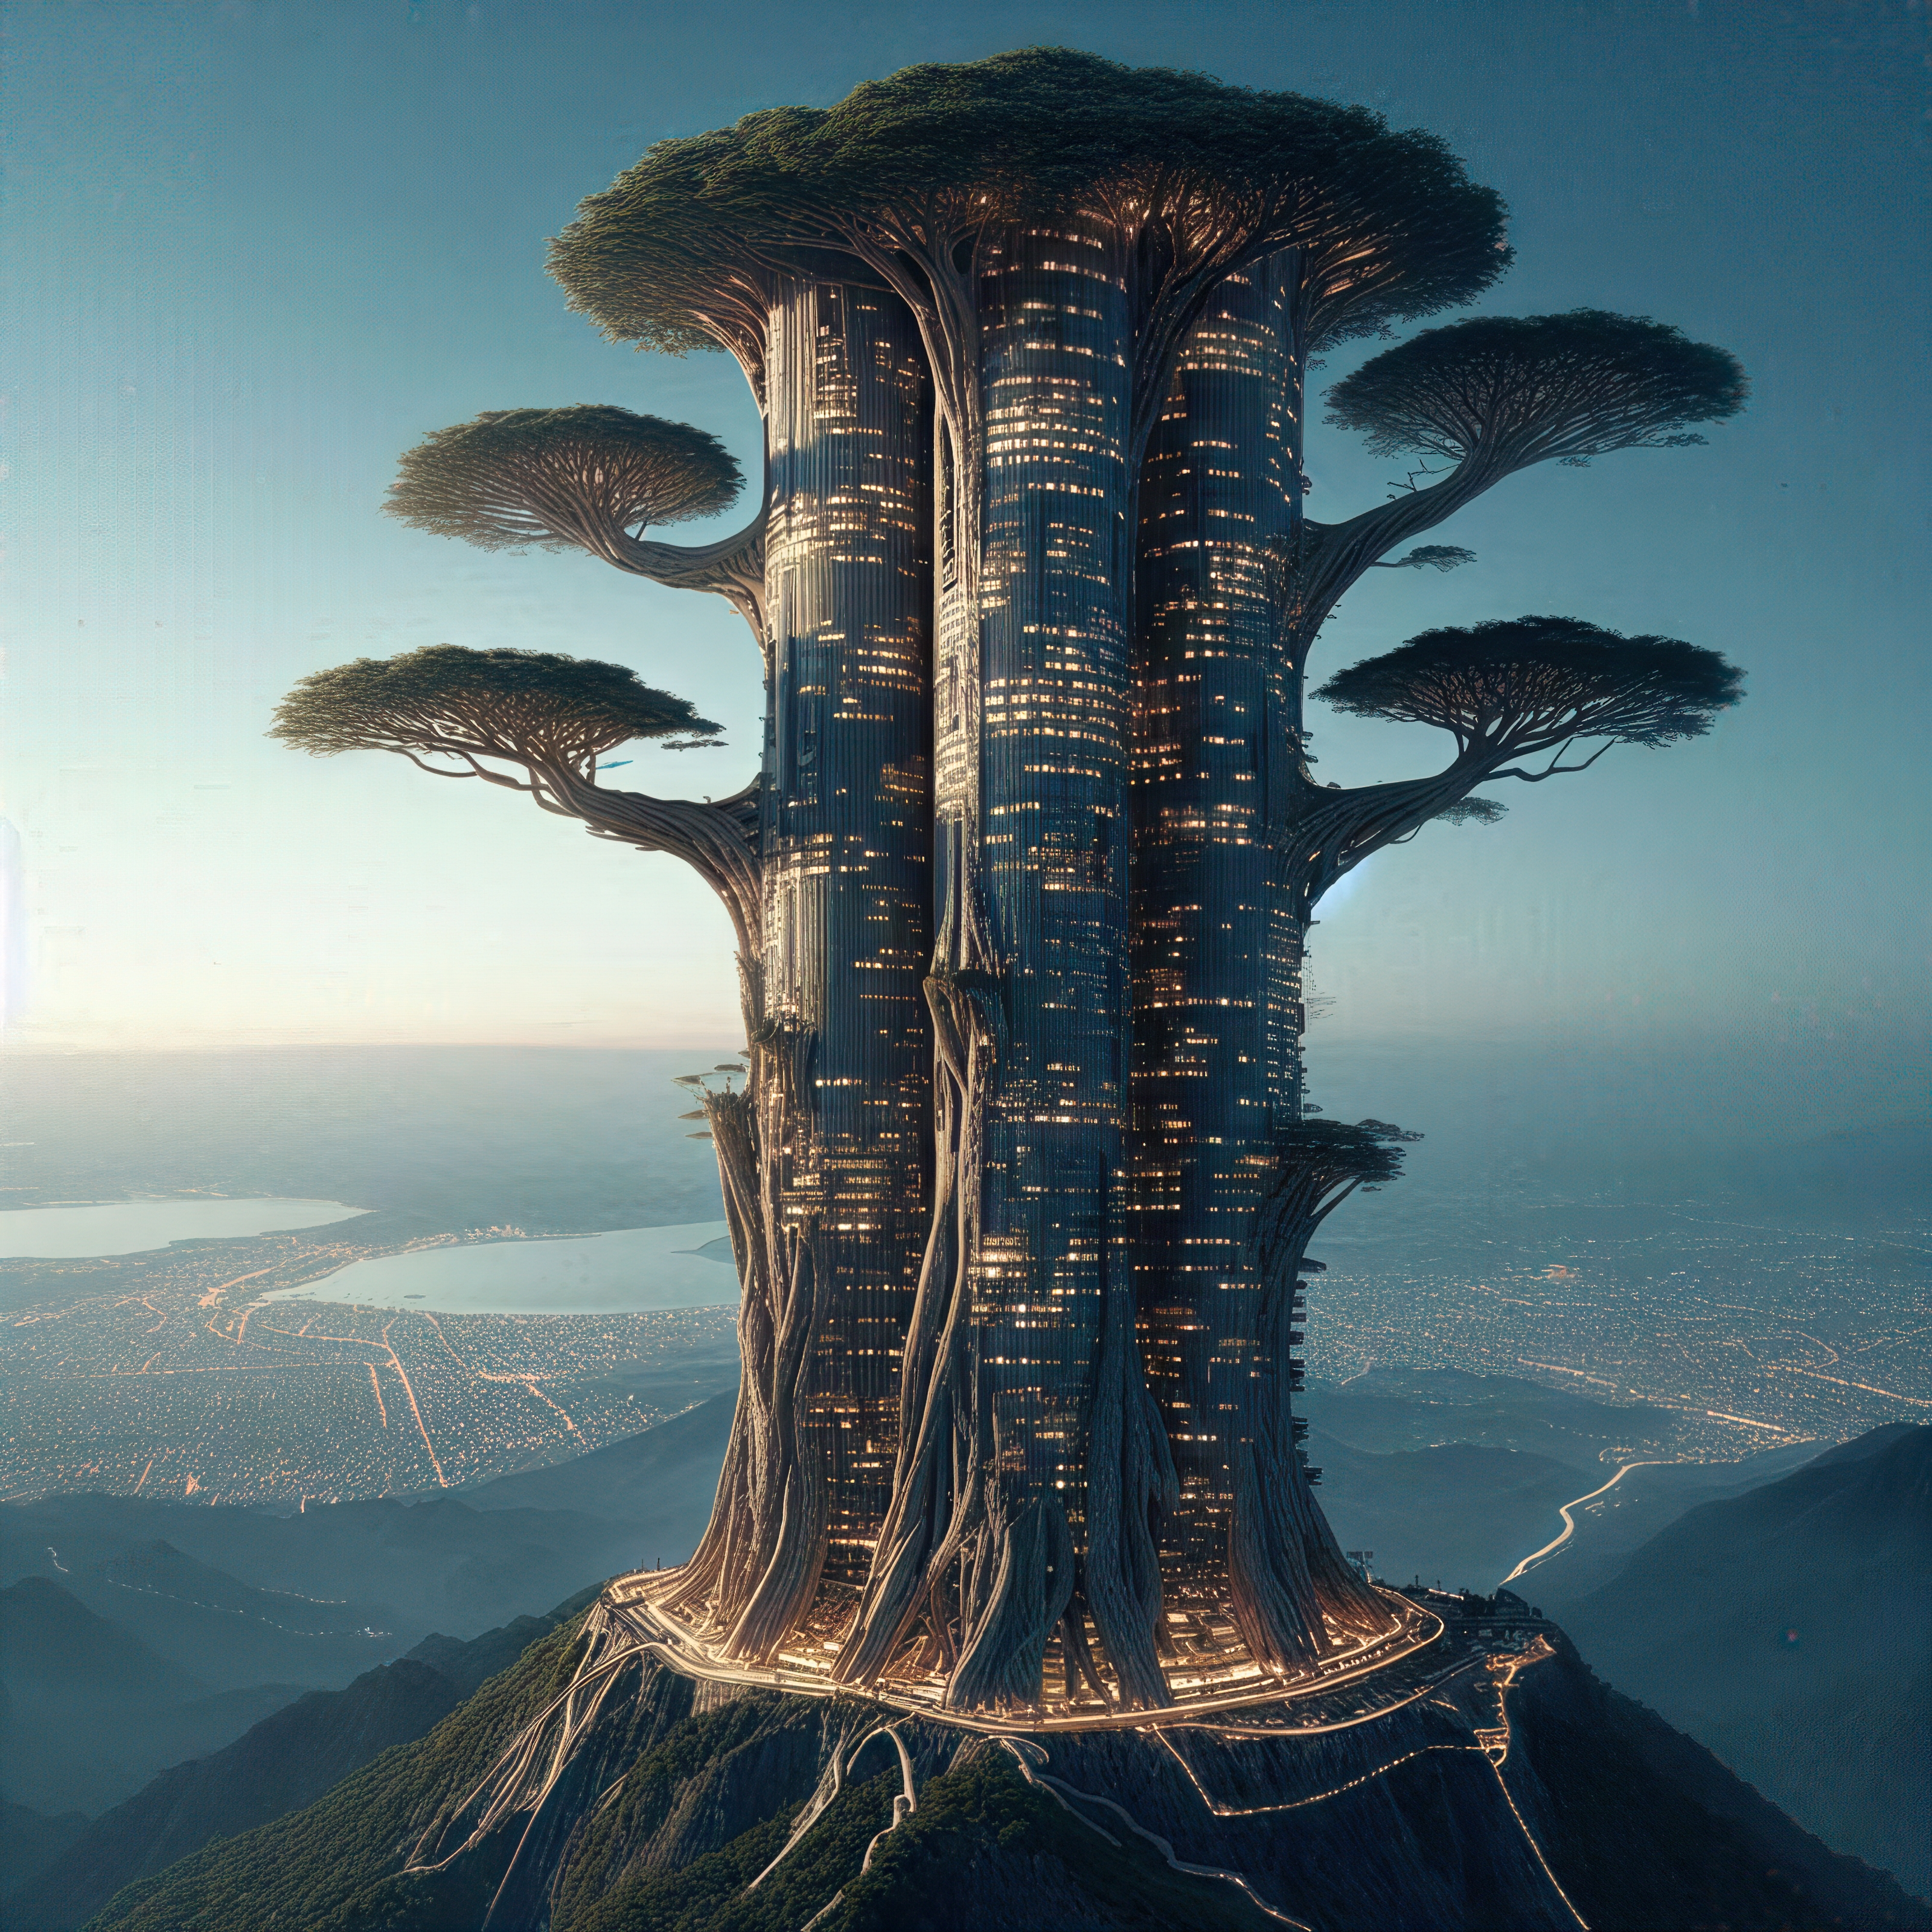 General 3200x3200 AI art fantasy architecture skyscraper trees